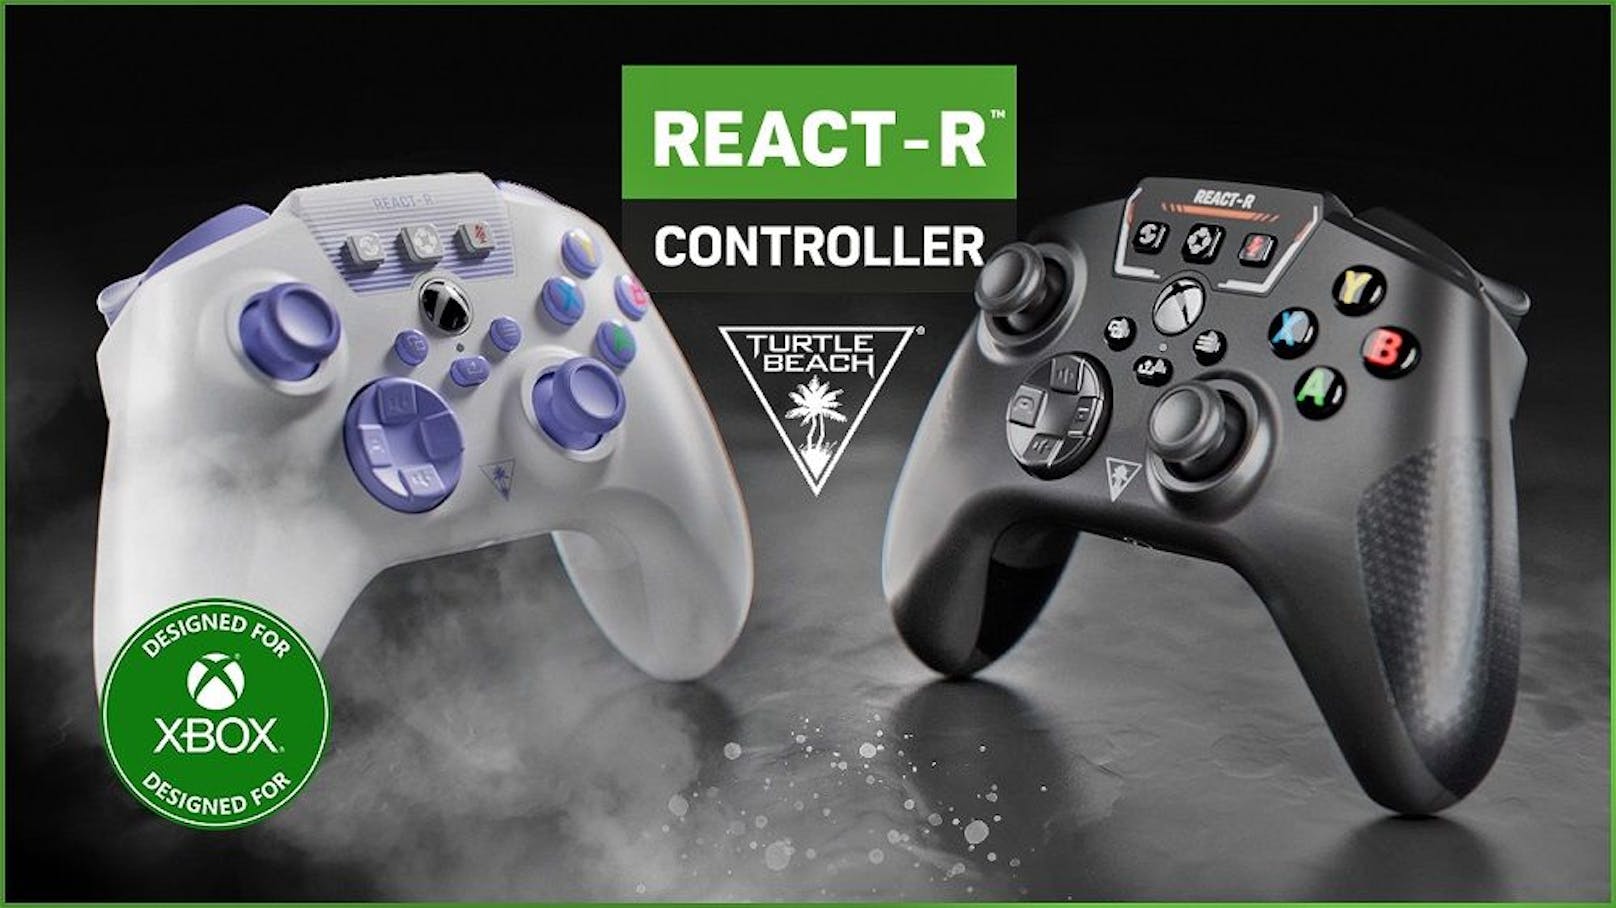 Turtle Beach erweitert mit dem React-R sein Controller-Line-up speziell für die Xbox.